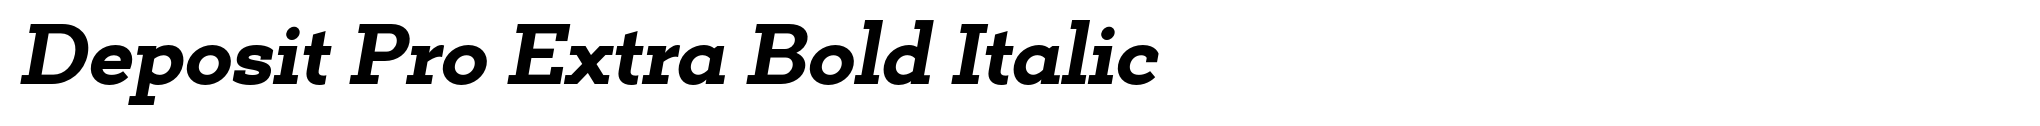 Deposit Pro Extra Bold Italic image